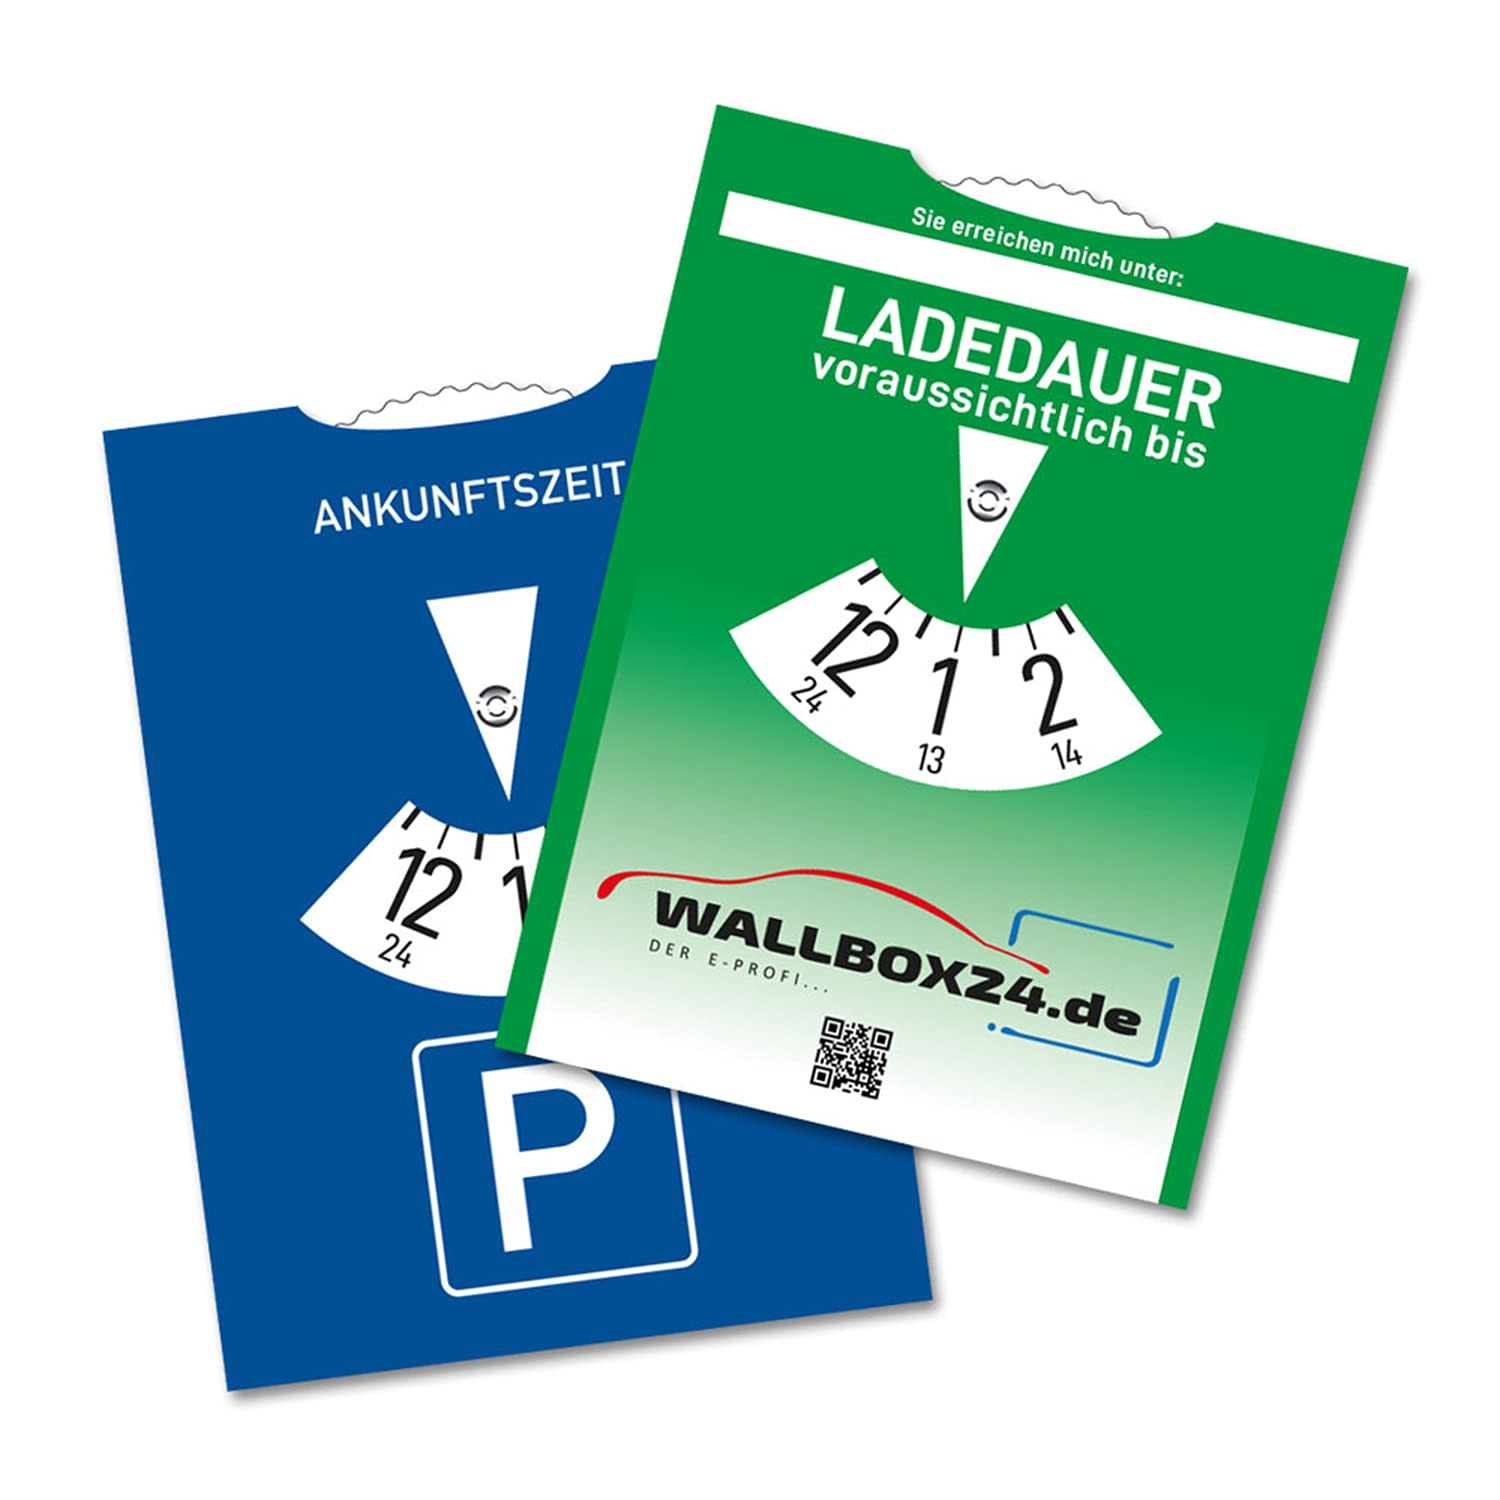 Wallbox24 Papp Parkscheibe Ladedauer einstellbar Zubehör Elektromobilität Parkuhr von WALLBOX24.de DER E-PROFI...